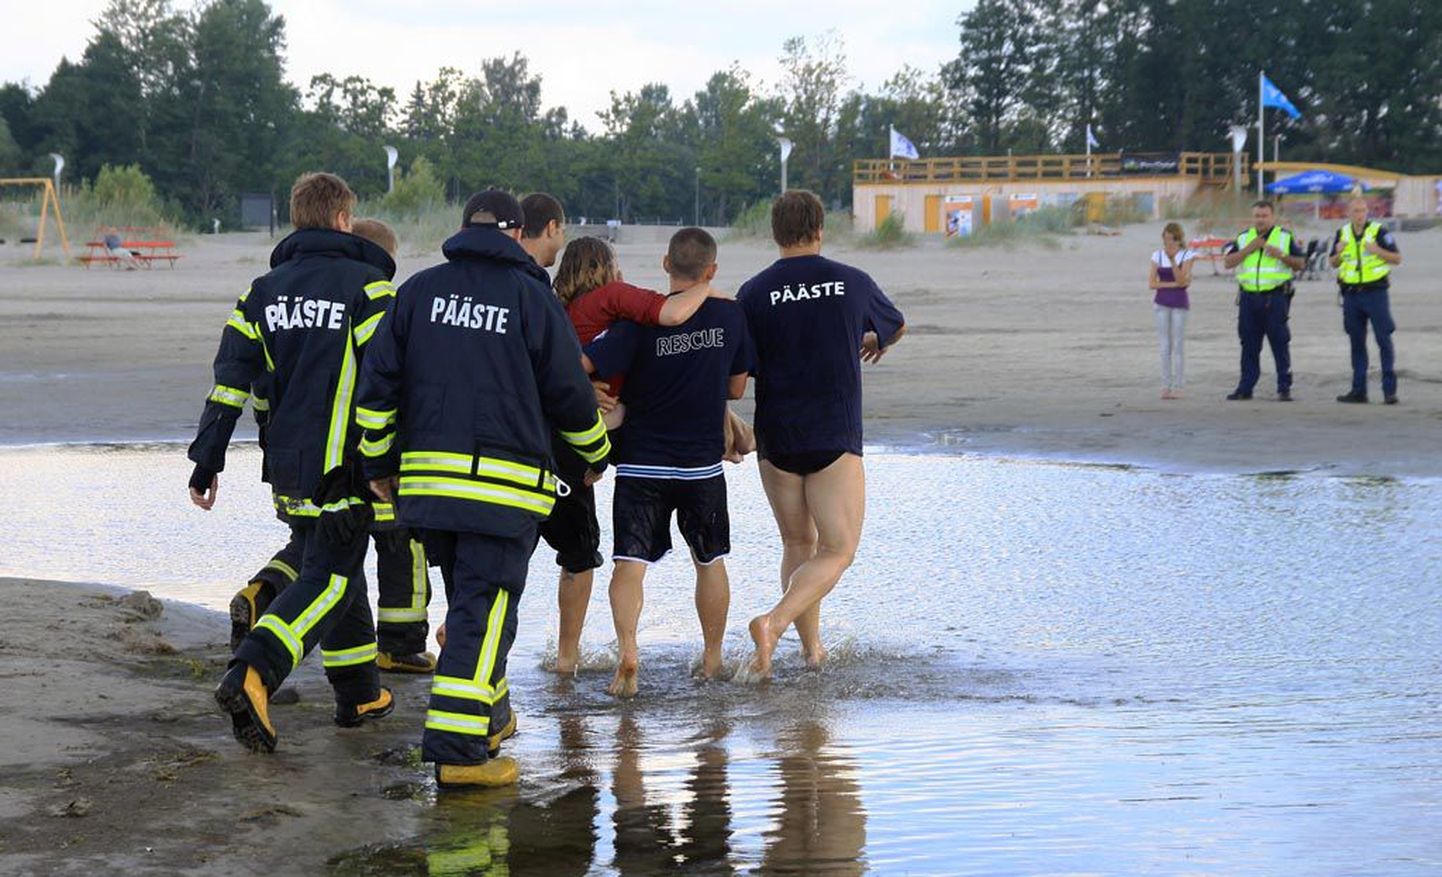 Läinud reedel tahtis neiu Pärnu rannast väidetavalt igaveseks vette kõndida. Õnneks said päästjad õigel ajal jaole ja tõid hingeahastuses noore inimese kaldale ja elule tagasi.